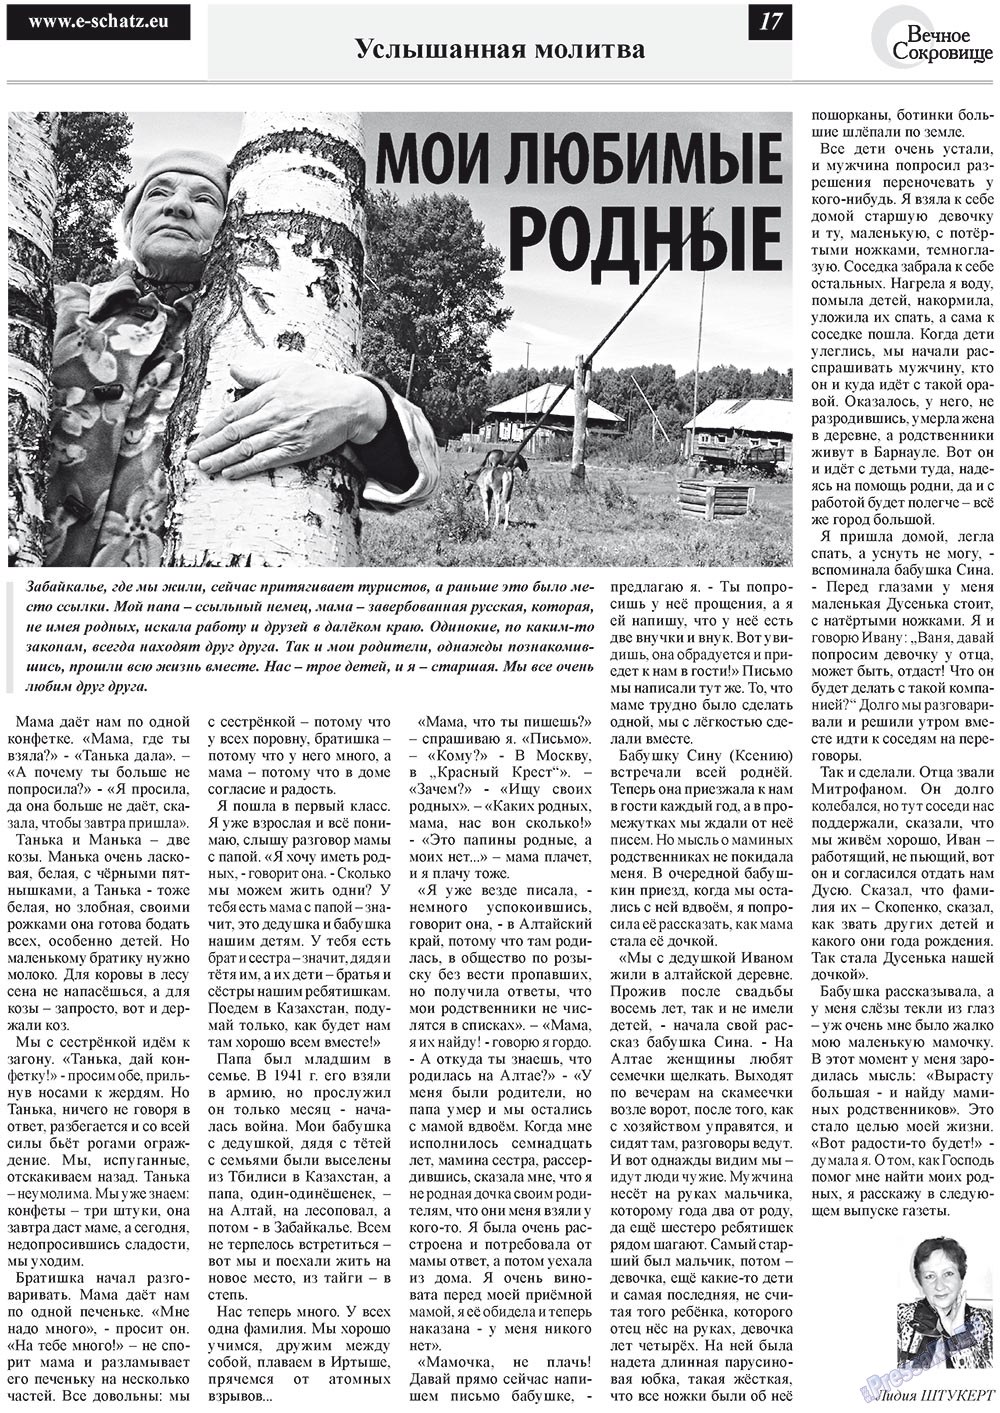 Вечное сокровище, газета. 2012 №4 стр.17